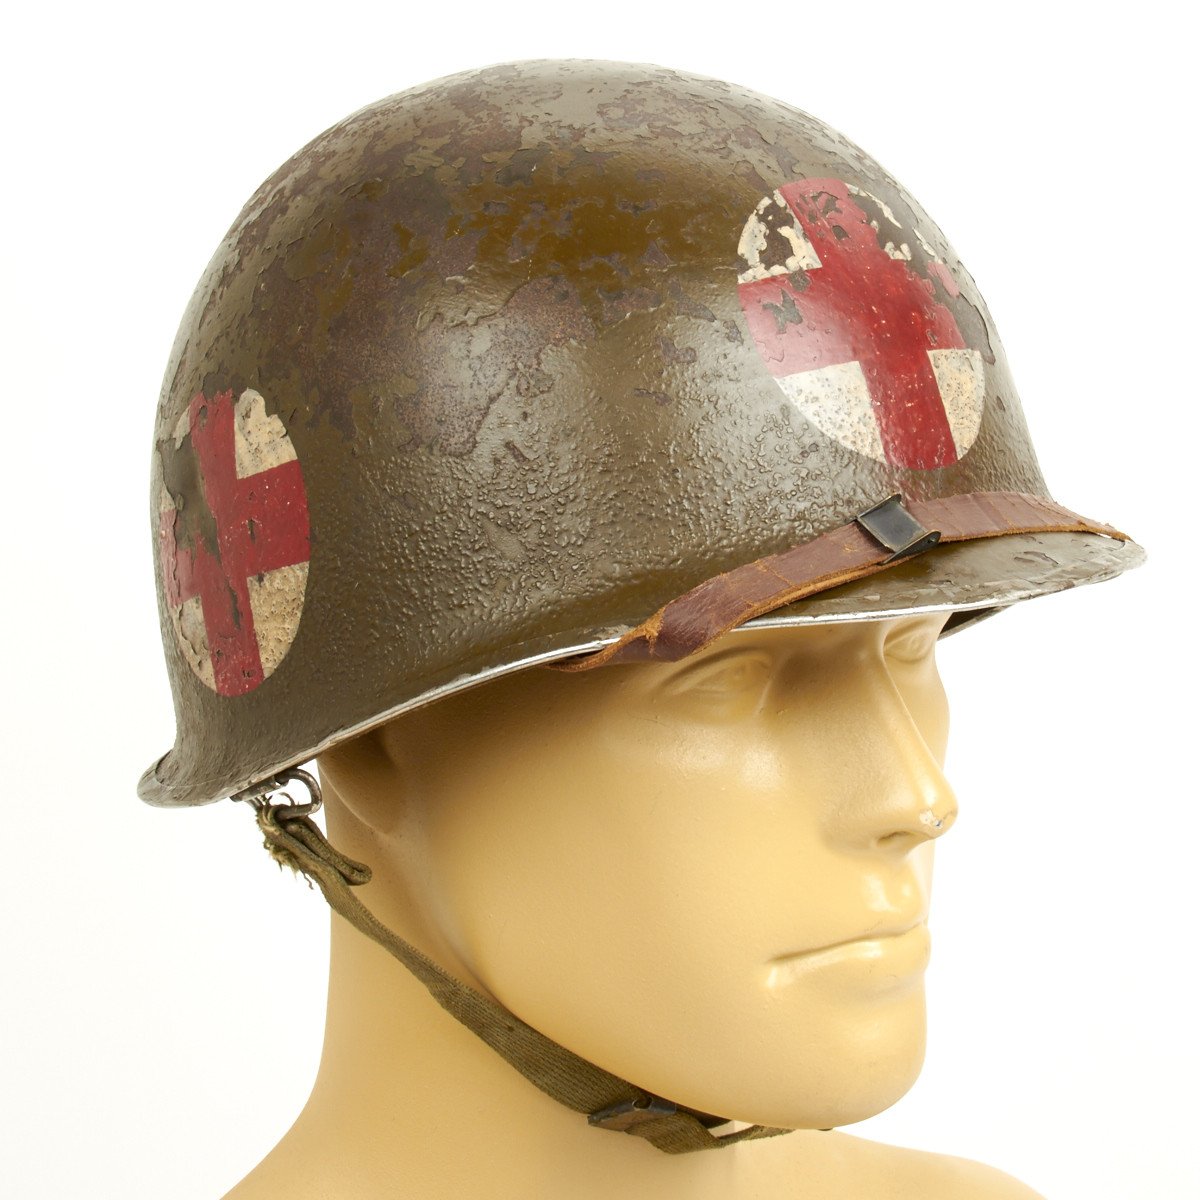 Ww2 M1 Medic Helmet Helmet - ww2 us helmet roblox